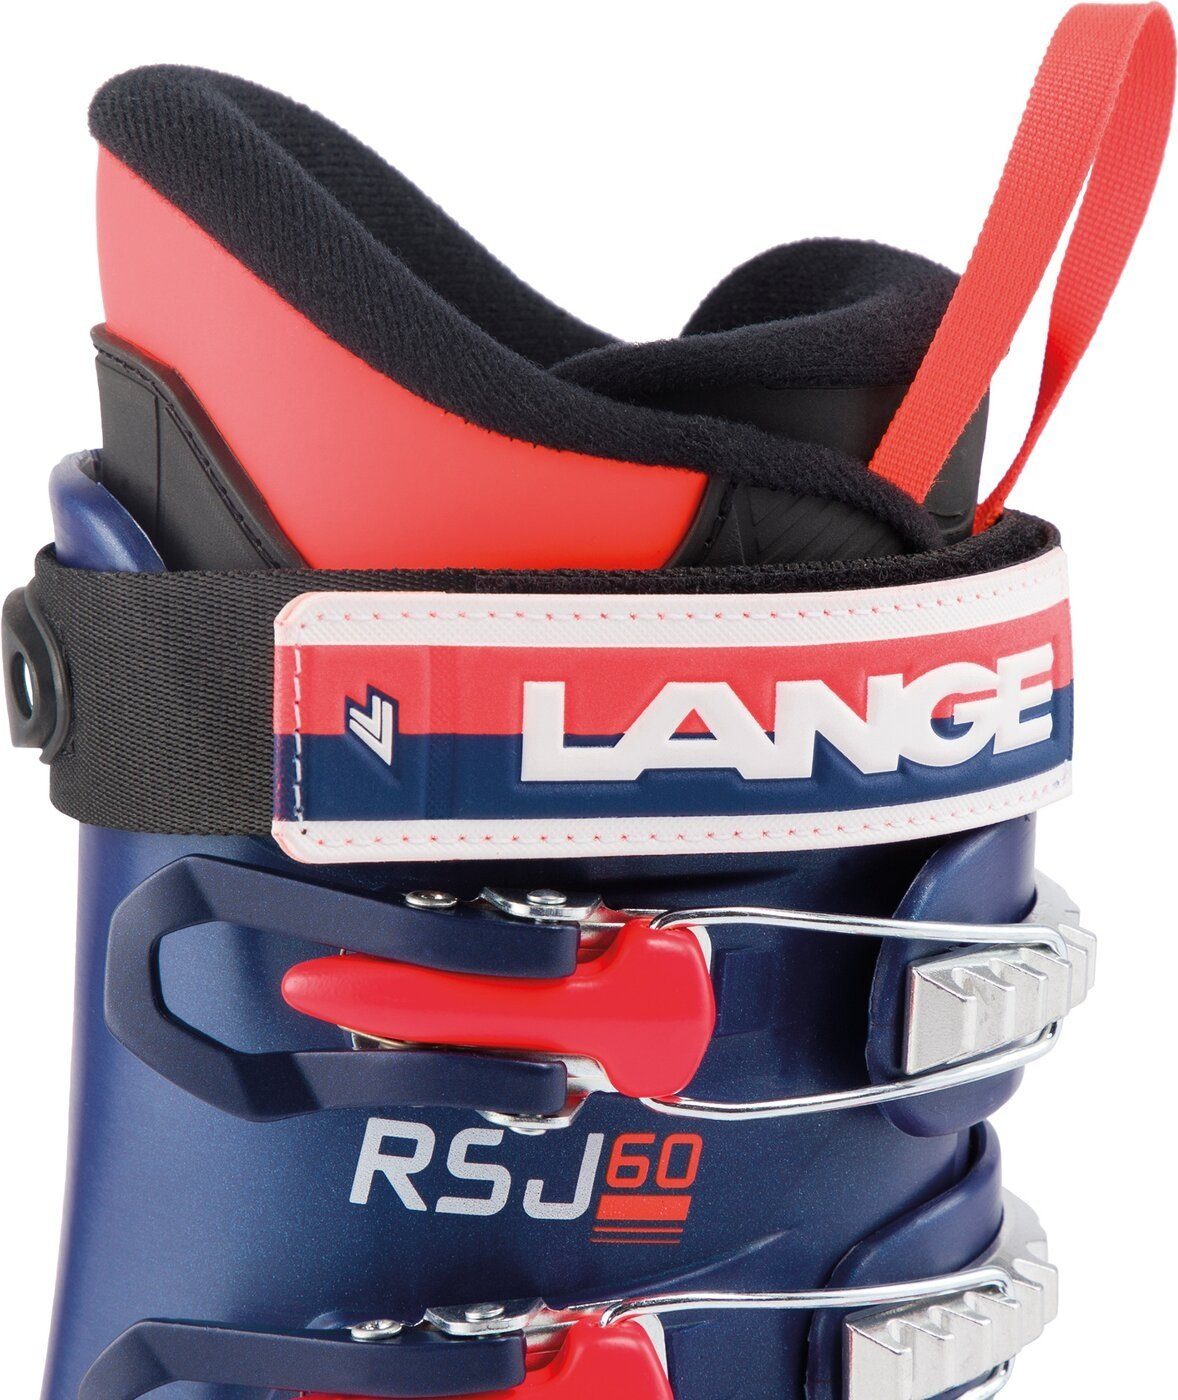 BLUE) Skischuh Lange (LEGEND RSJ 60